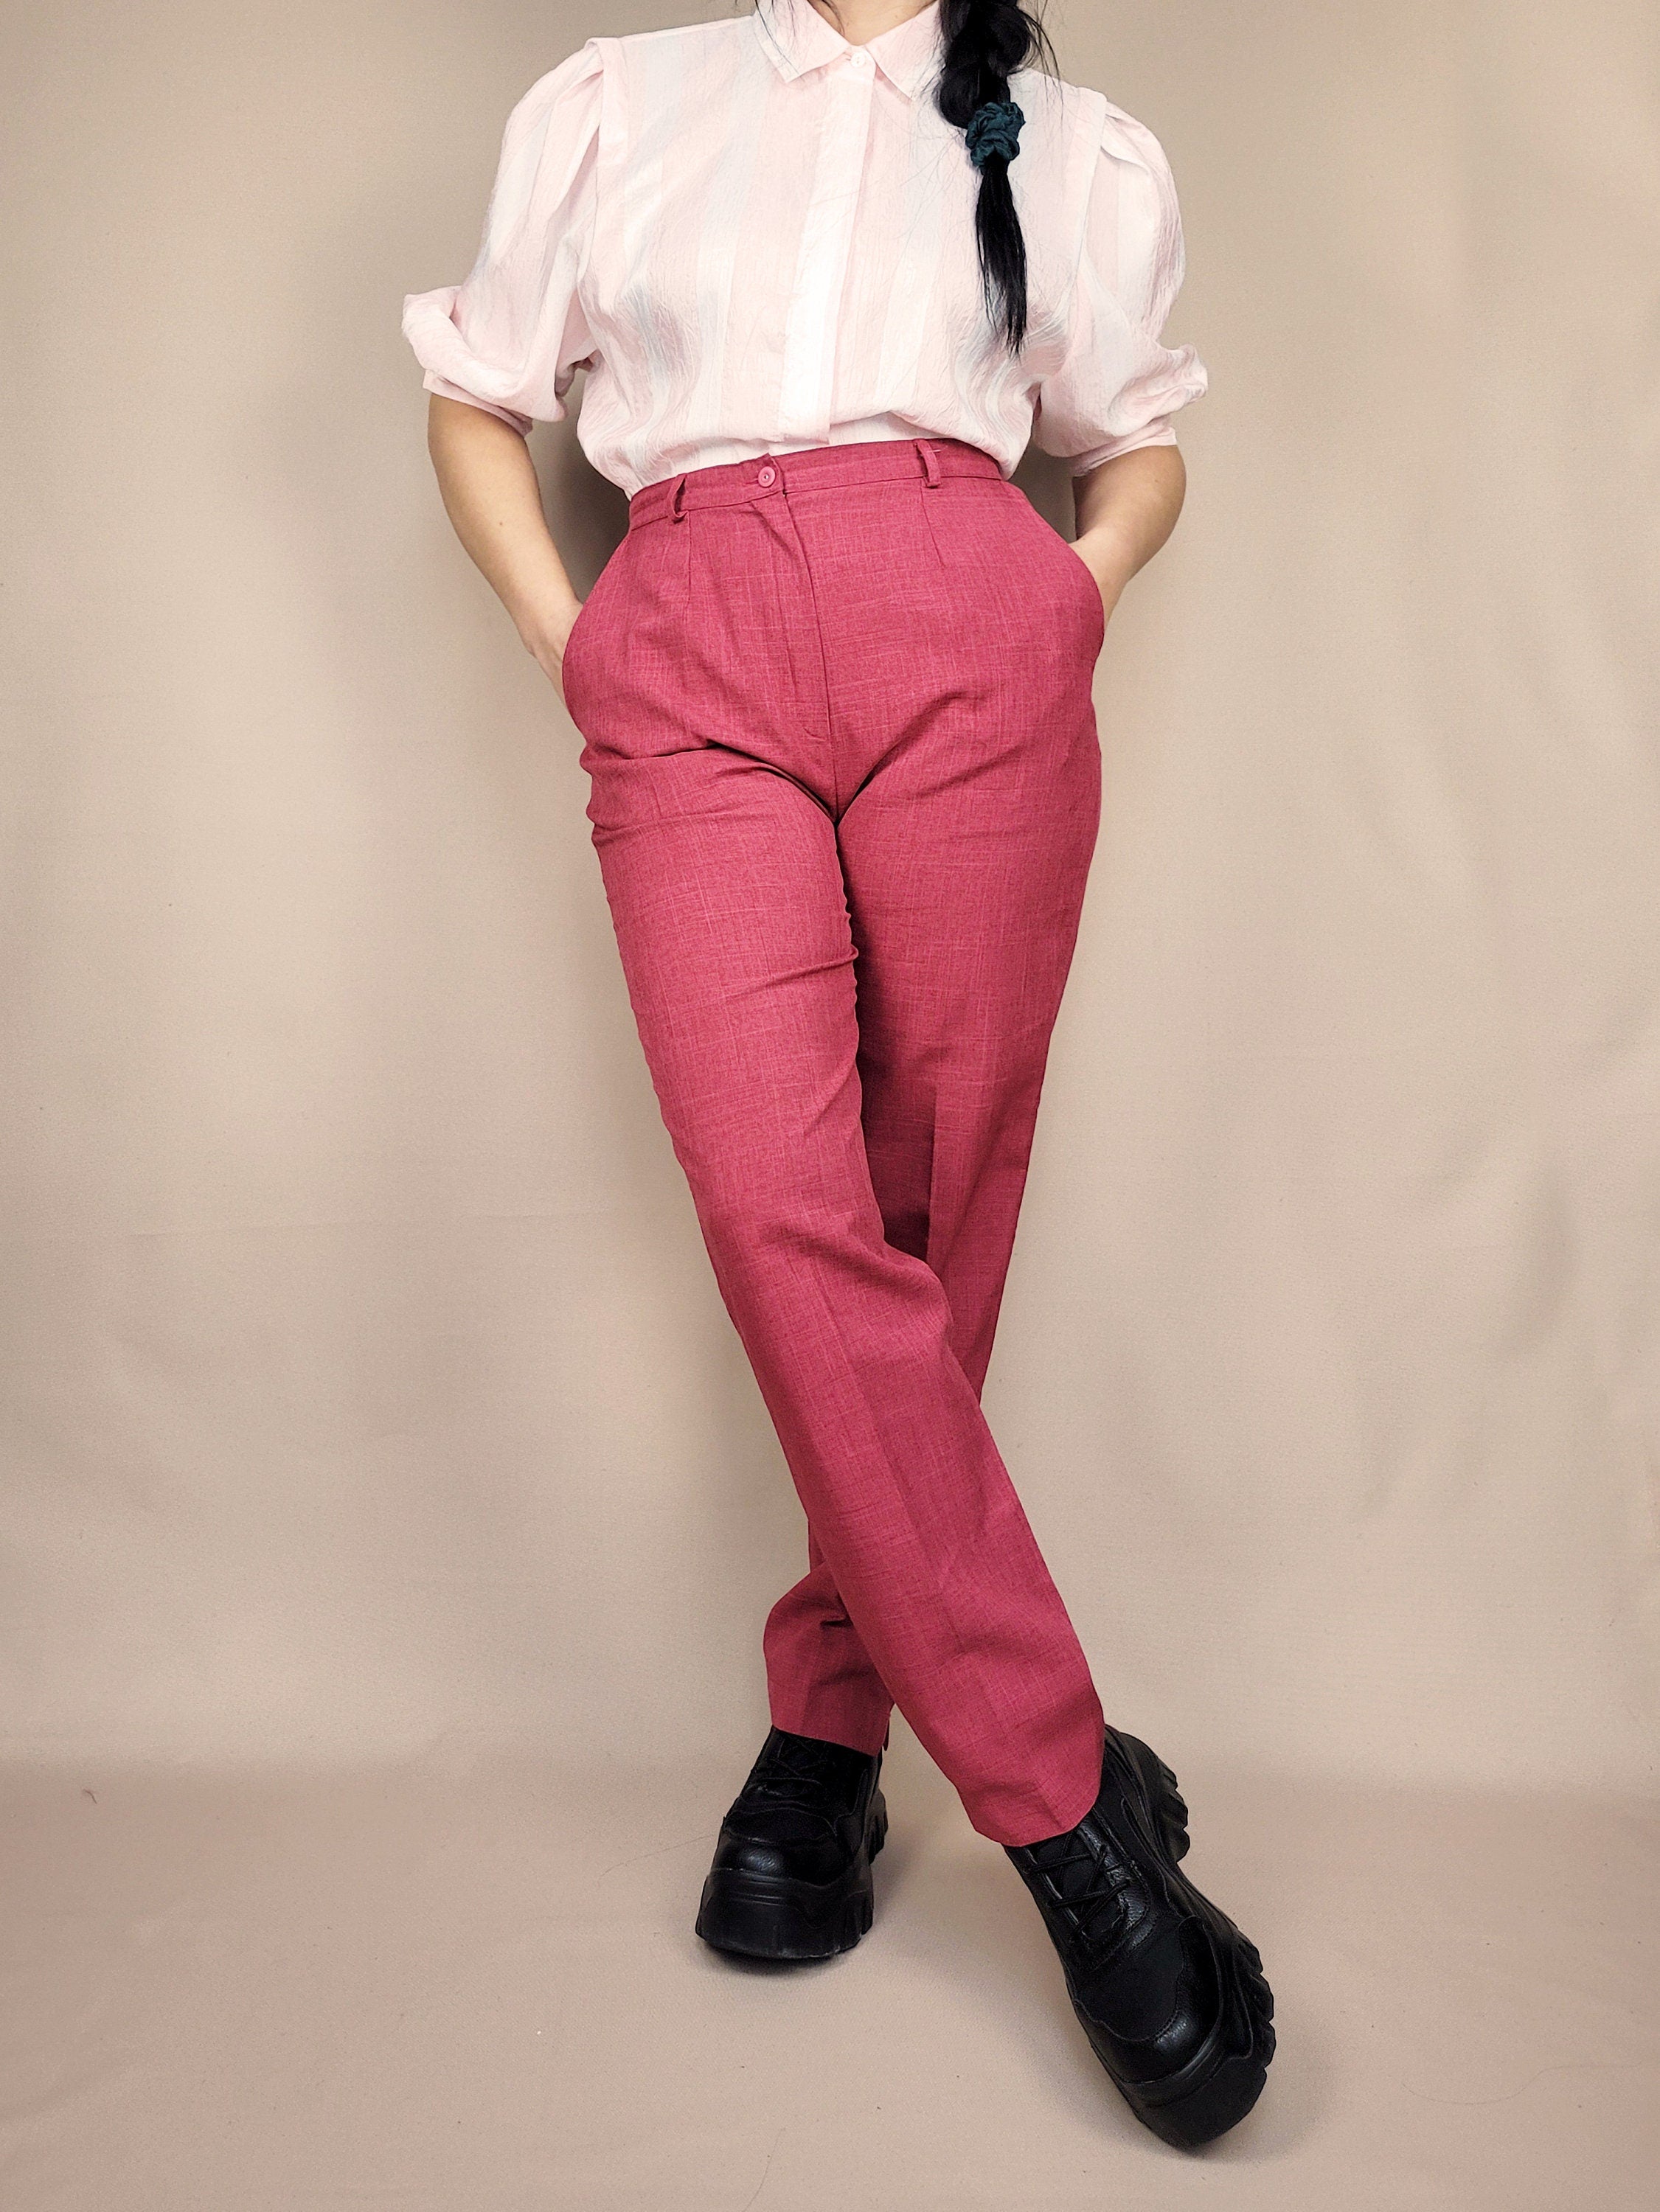 Vintage 90s red high waist smart formal pants